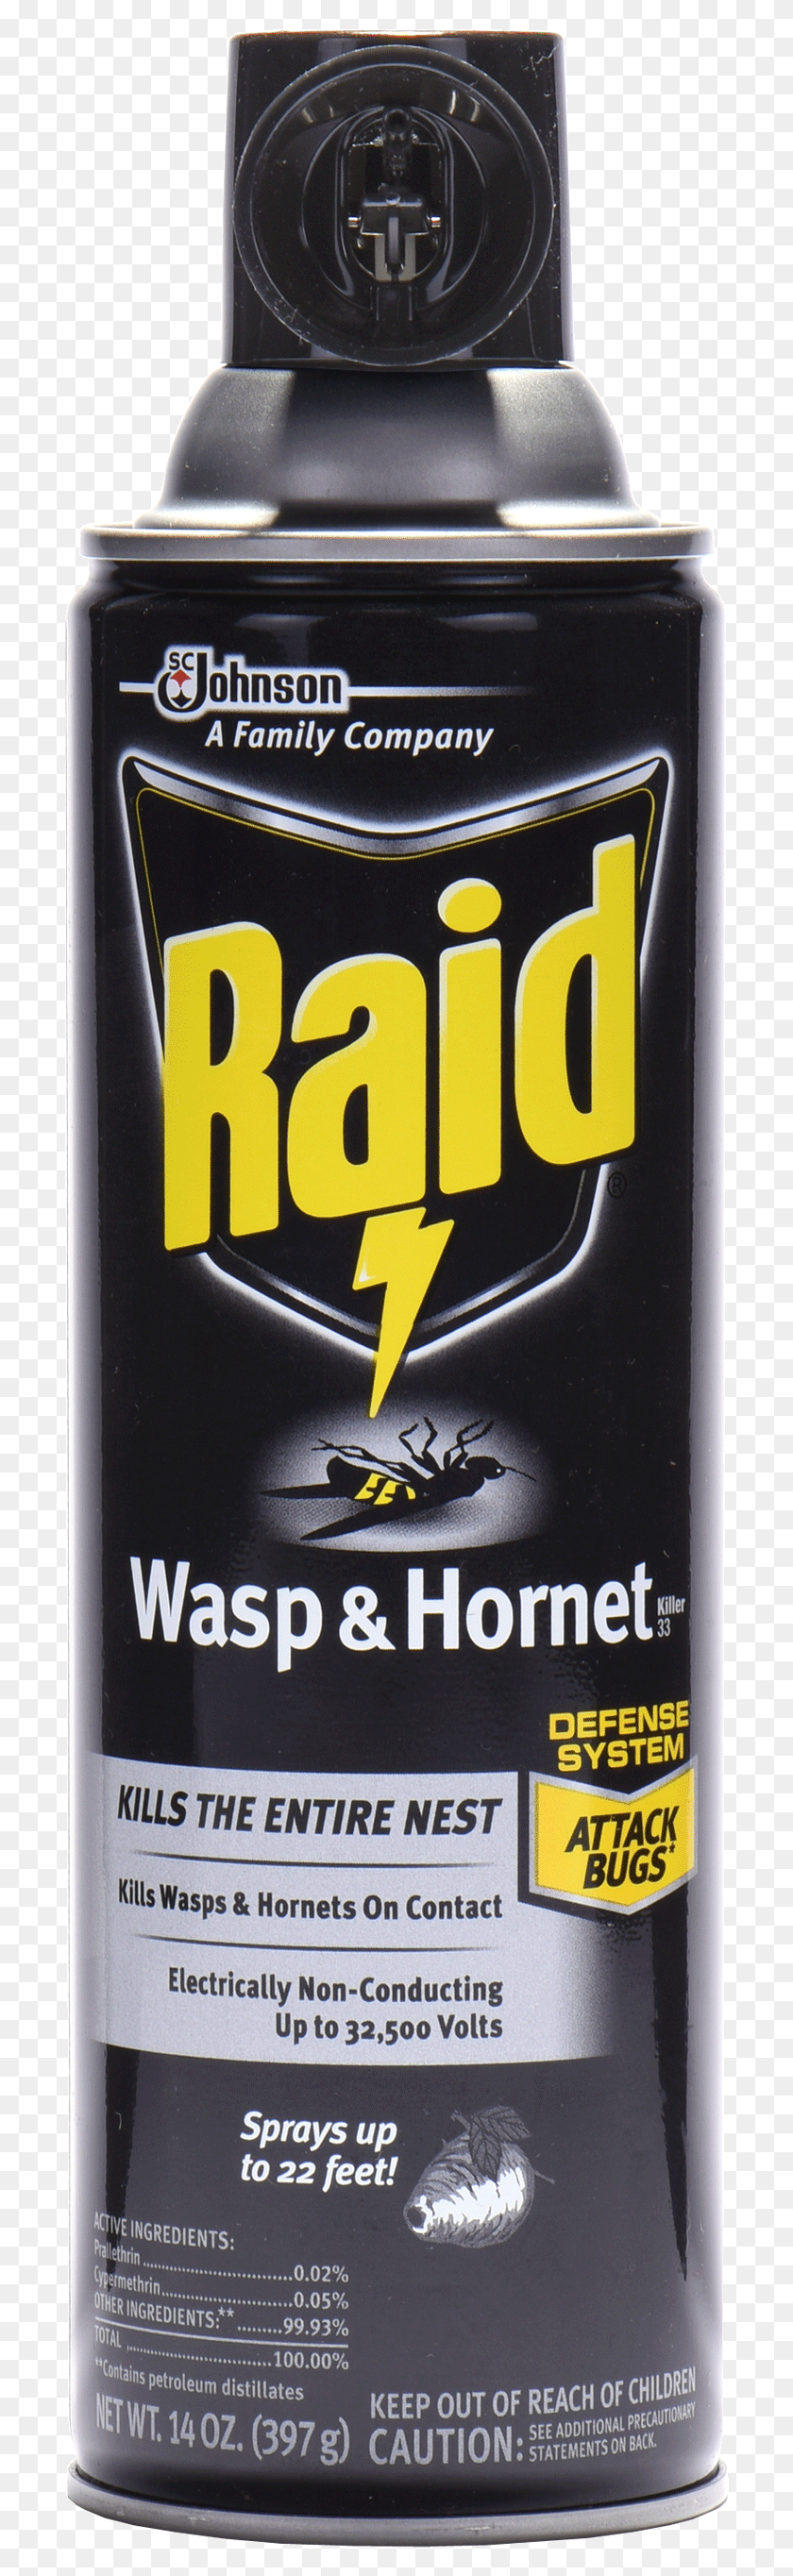 704x2669 Raid Wasp Amp Hornet Solutions, Ликер, Алкоголь, Напитки Hd Png Скачать